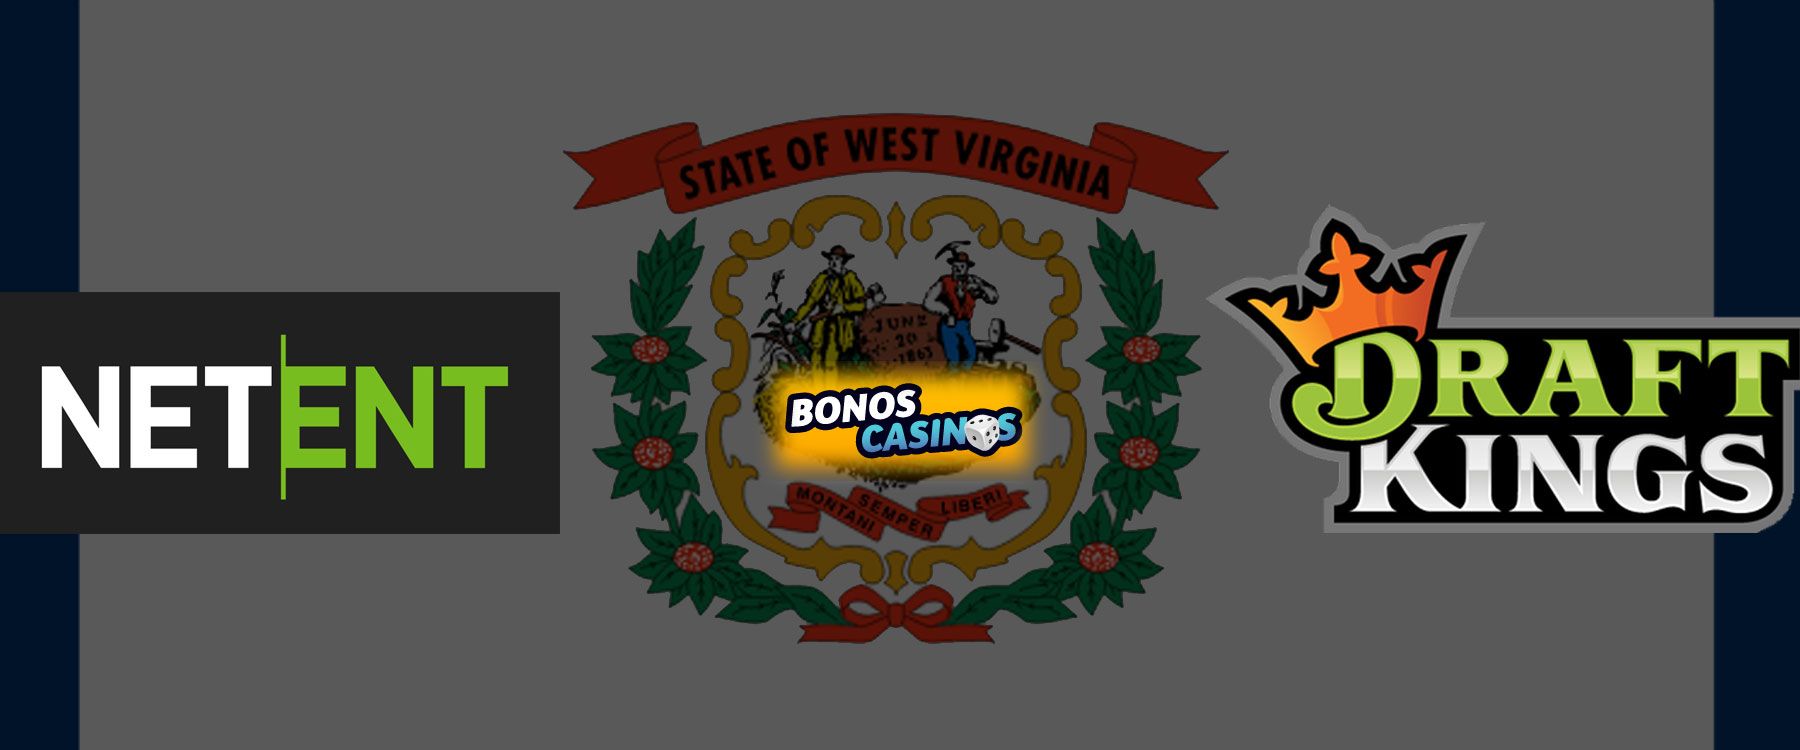 logo de NetEnt incursiona en Virginia Occidental con nuevos títulos